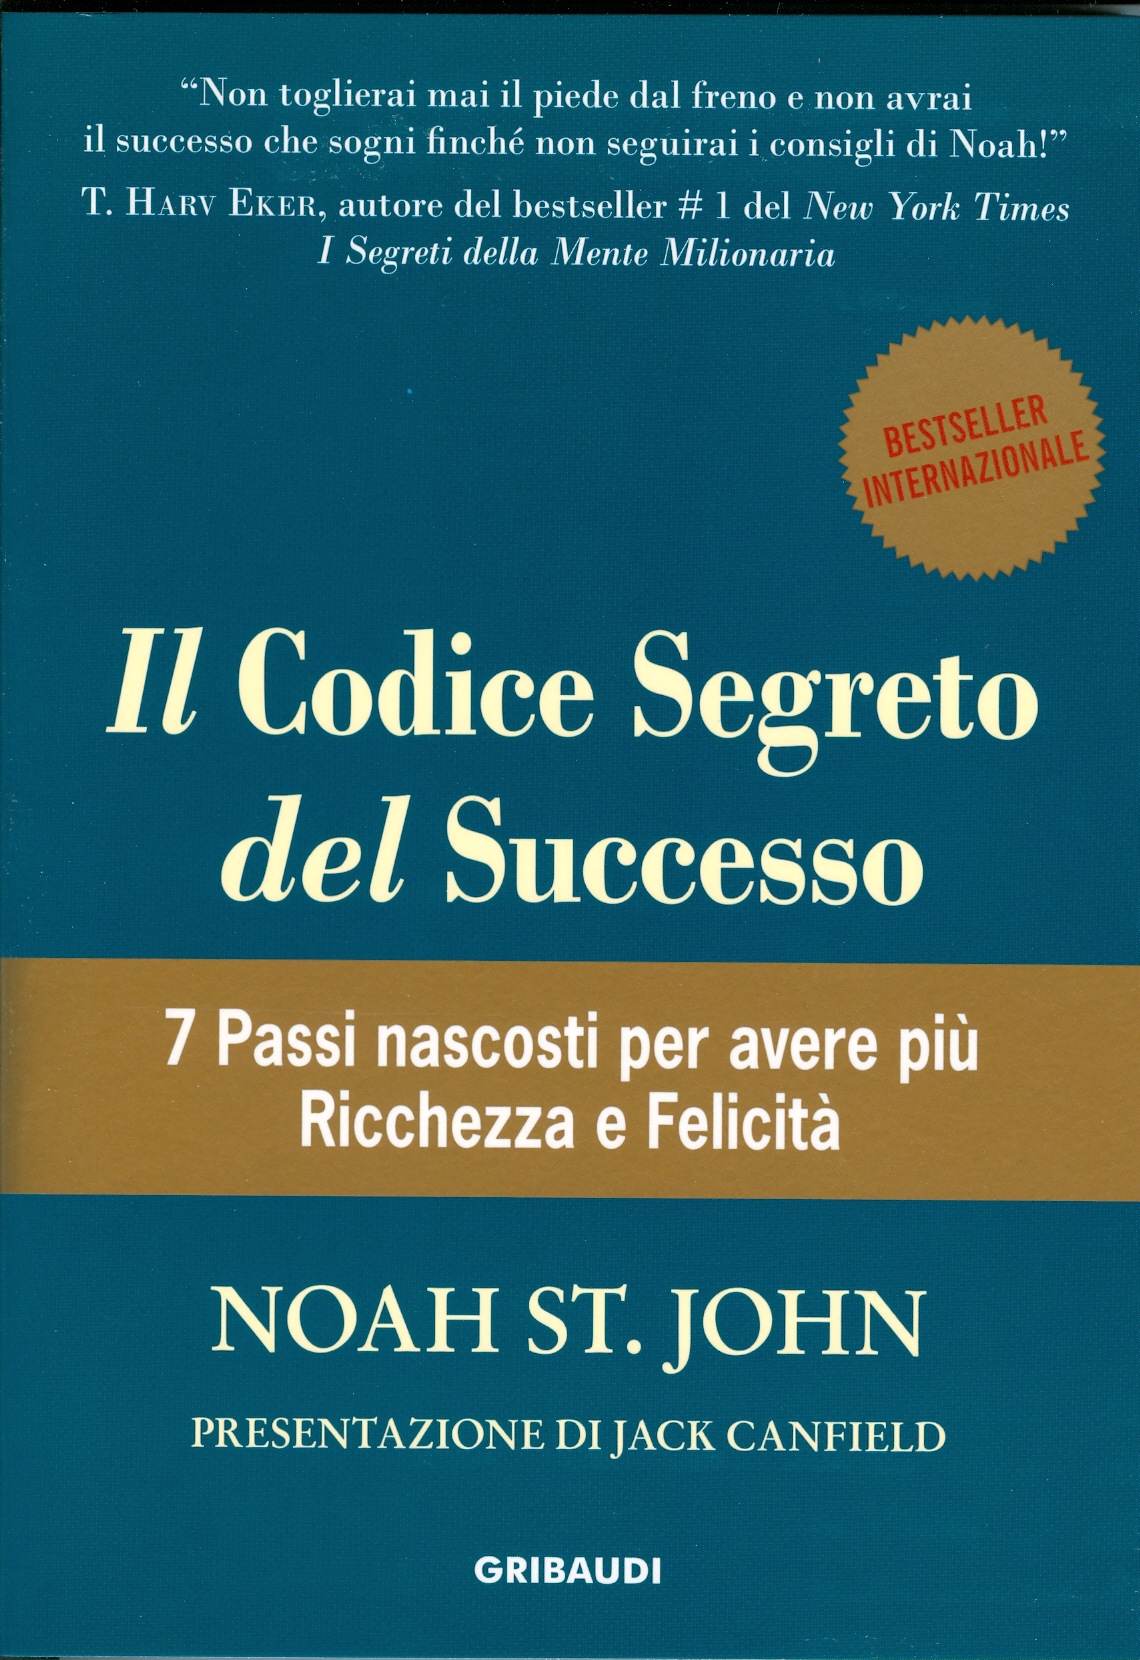 Noah St.John - Il Codice segreto del Successo